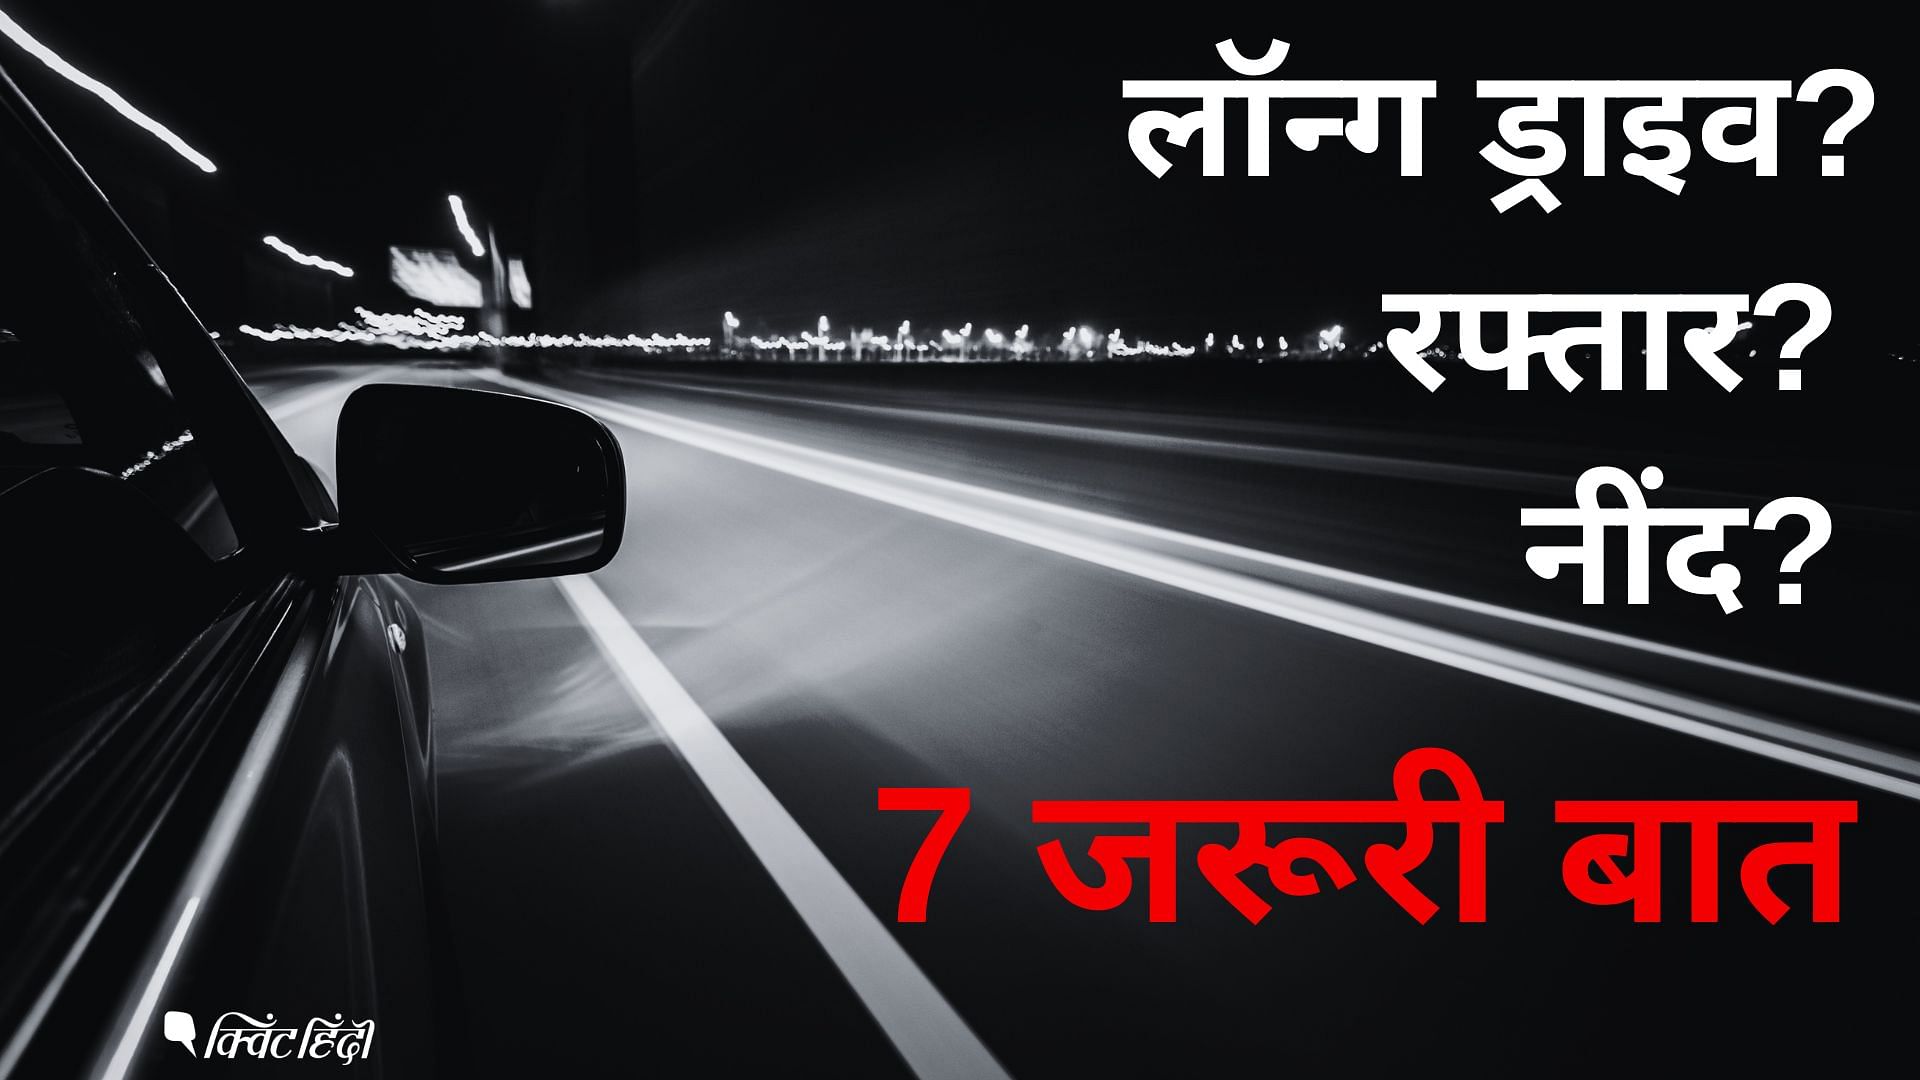 <div class="paragraphs"><p>Rishabh Pant Accident: रात के लॉन्ग ड्राइव में 7 बातों का ख्याल जरूर रखें-Photos</p></div>